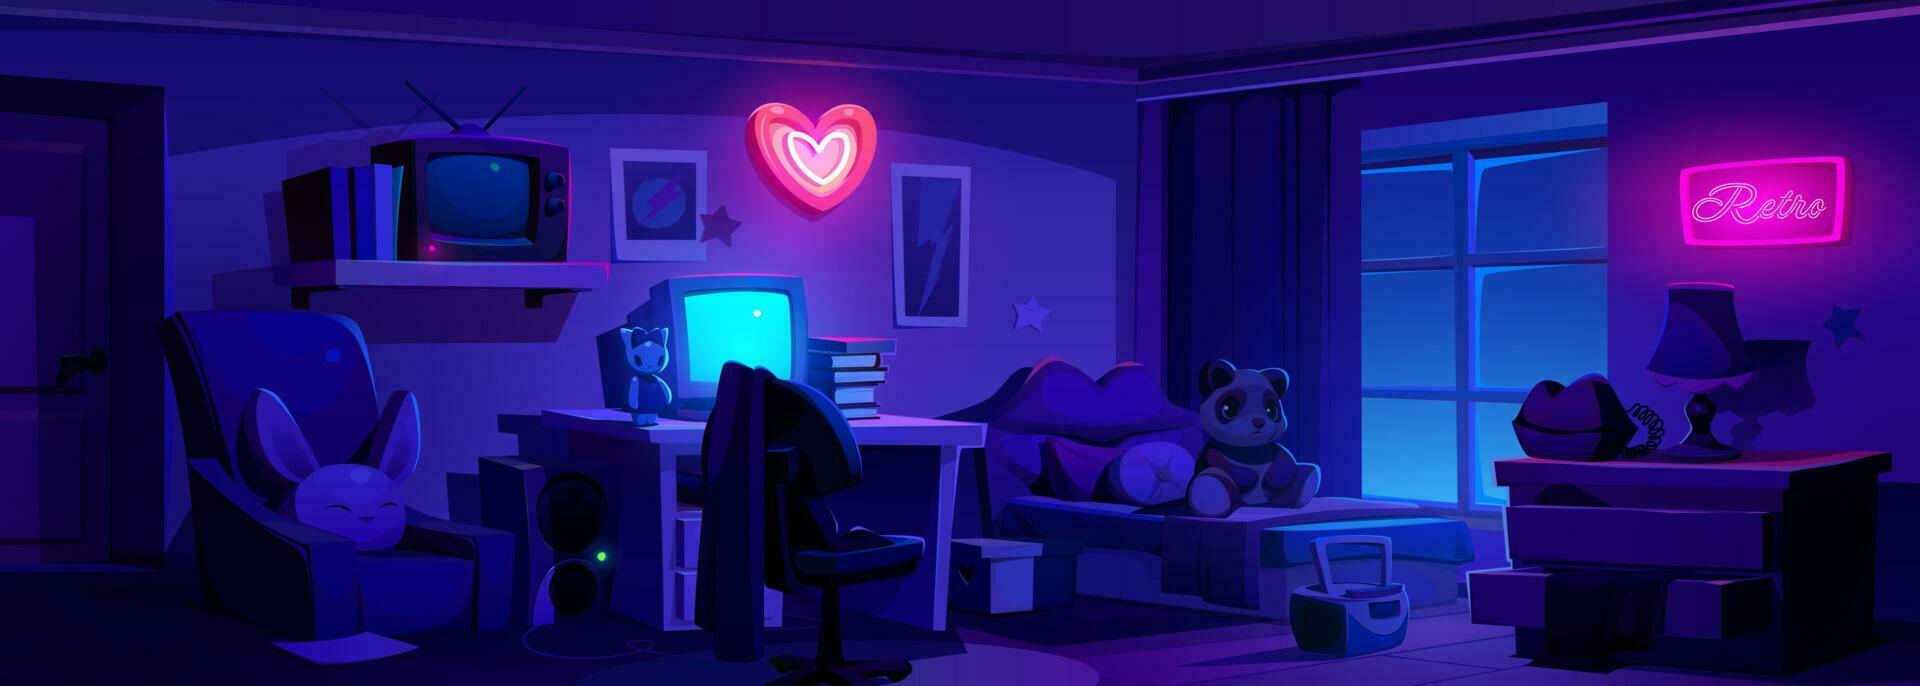 Nacht y2k Mädchen Schlafzimmer Innere mit Neon- Herz vektor